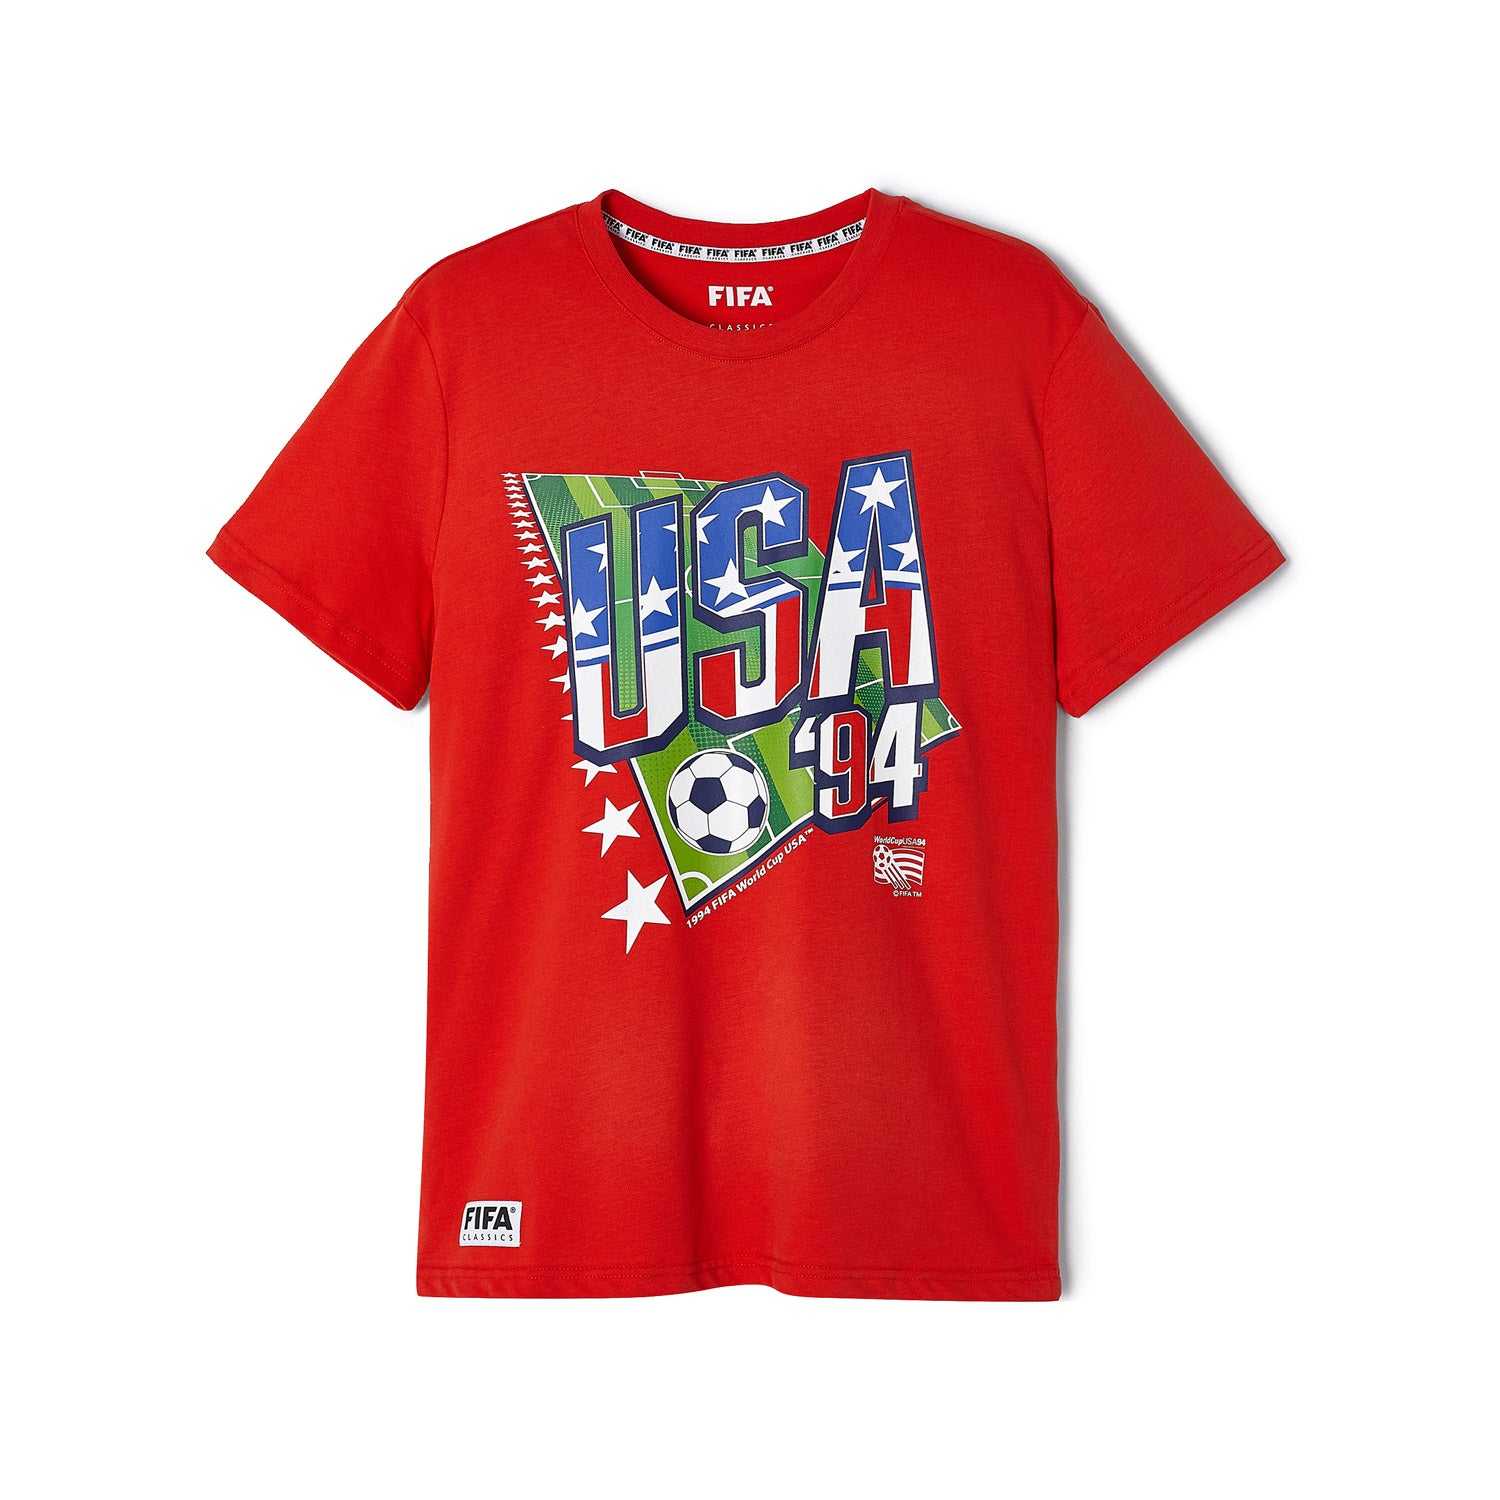 FIFA Rewind USA '94 Retro T-Shirt - Mens